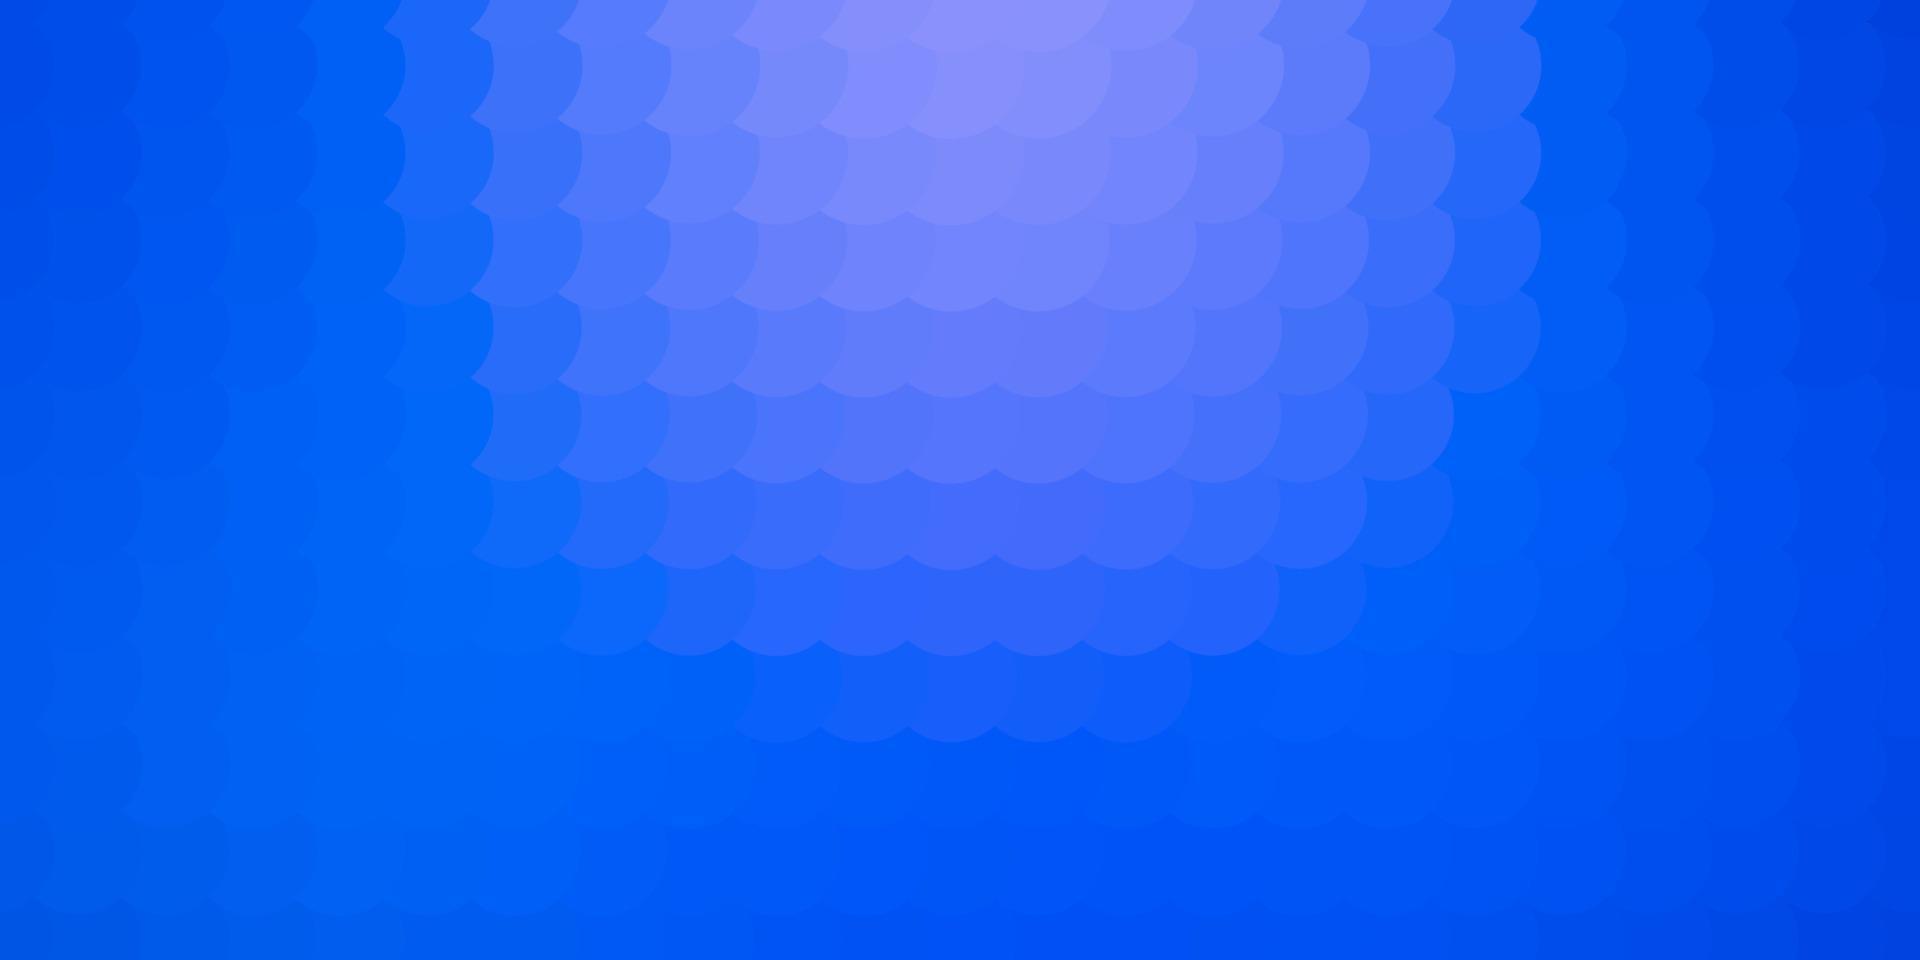 fundo azul claro do vetor com bolhas.